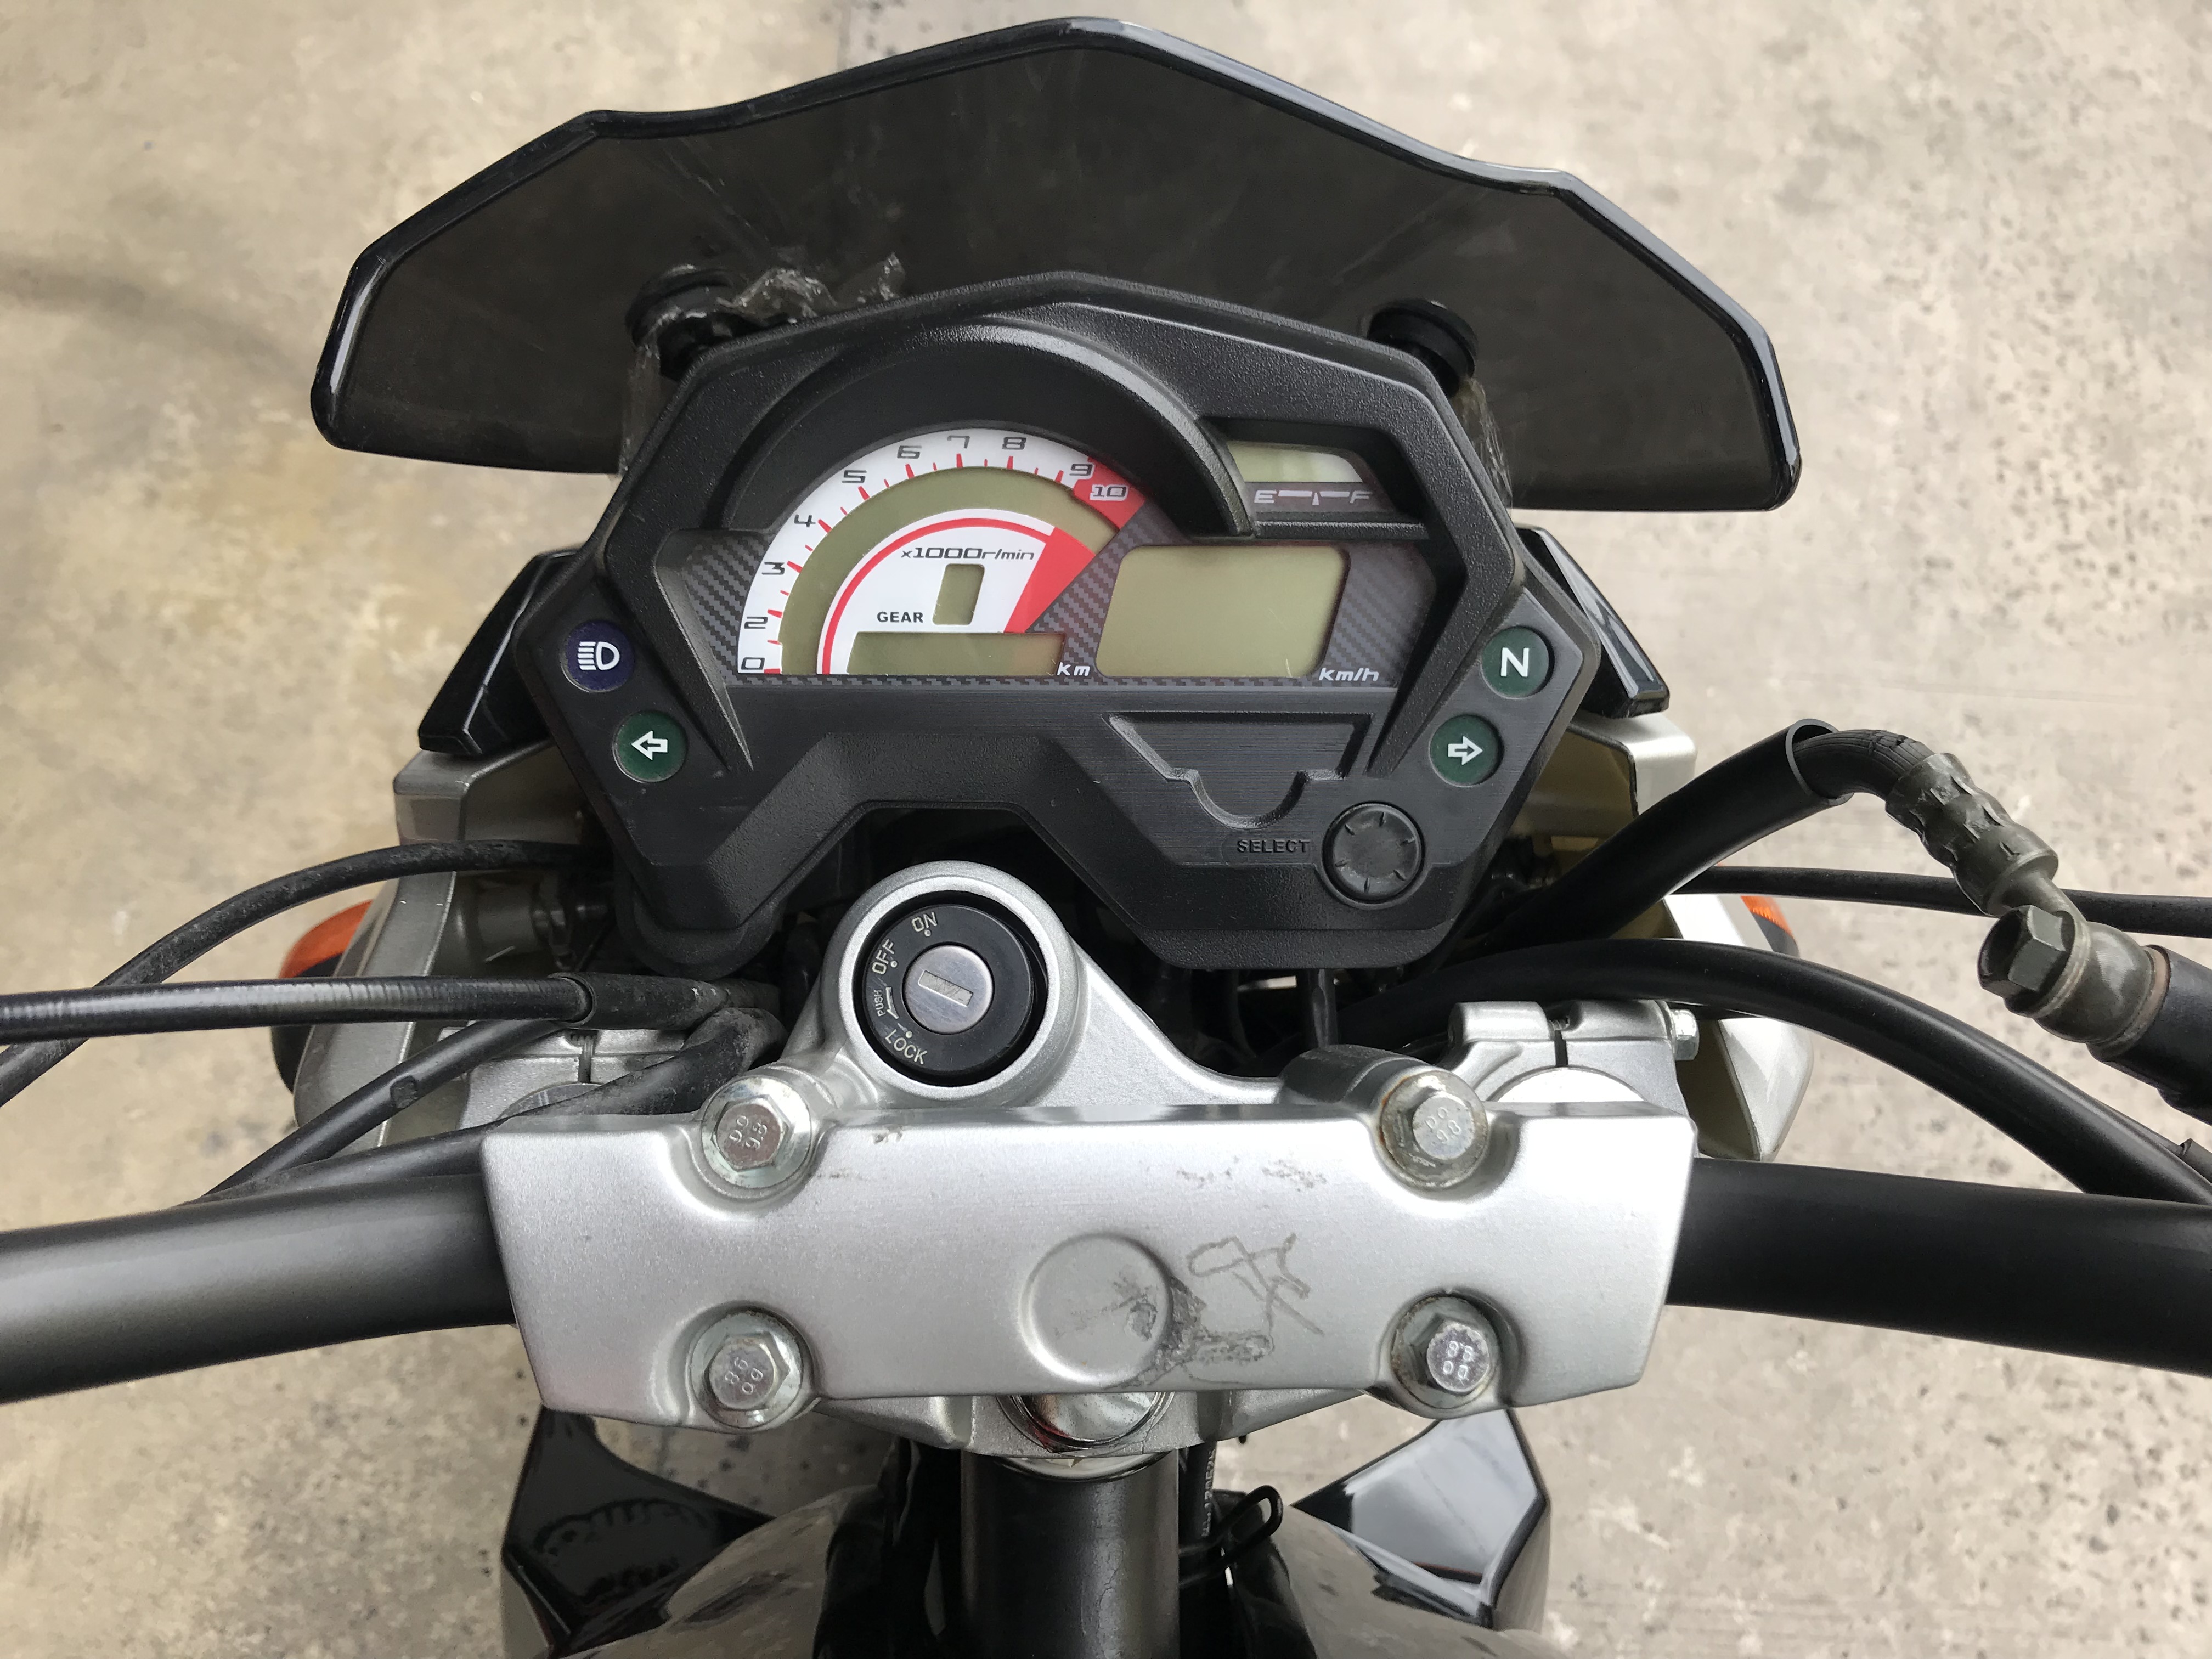 Moto Motomel Sirius 200 - 